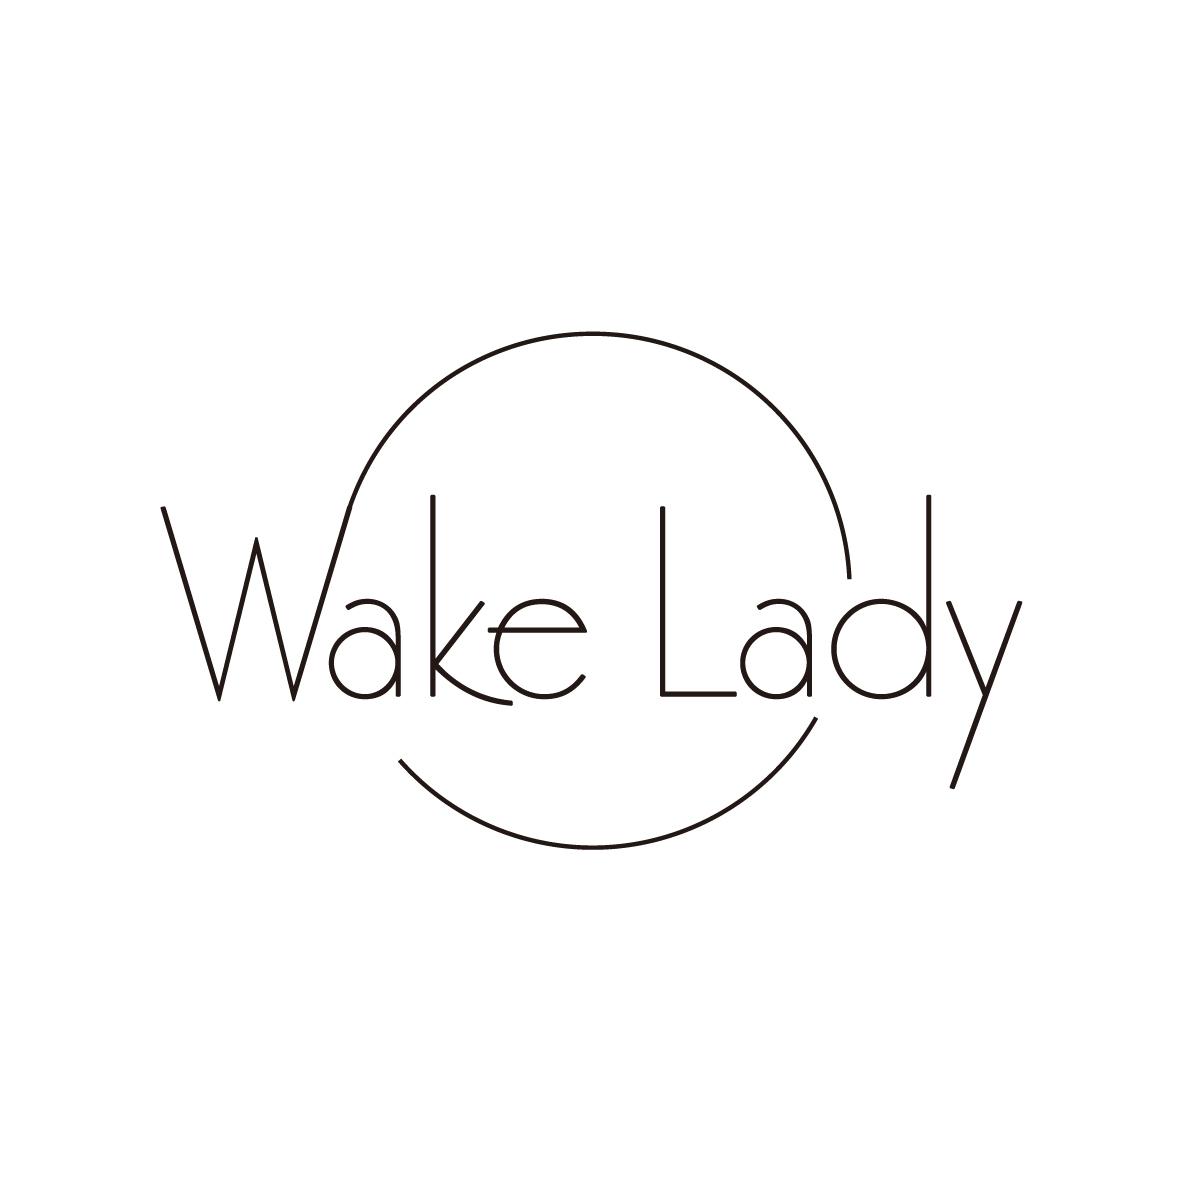 WAKE LADY